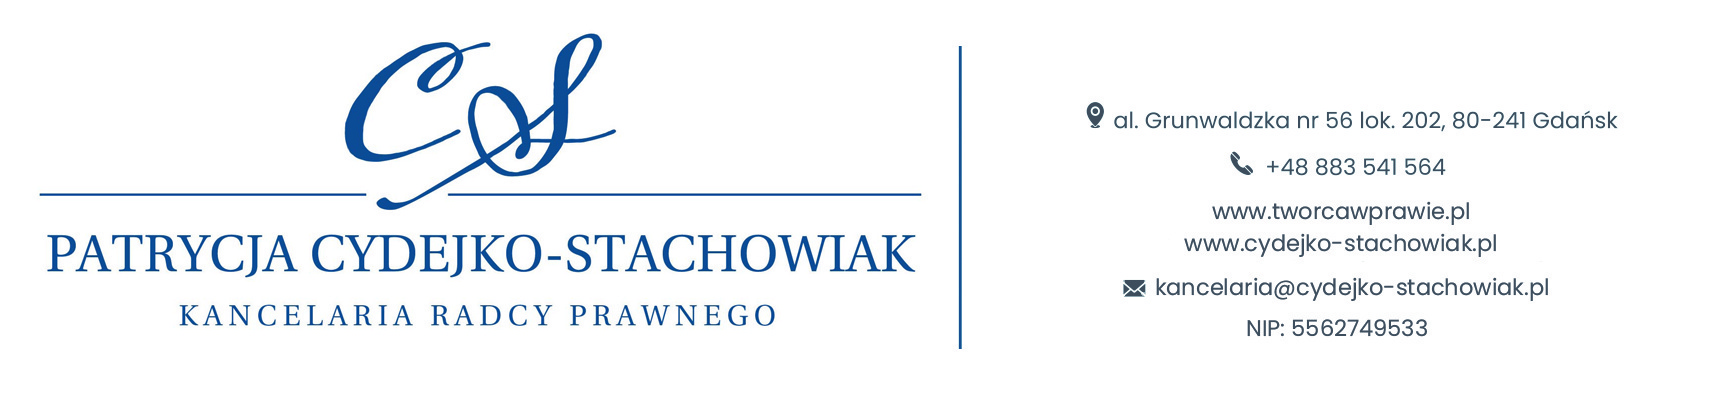 Kancelaria prawna dla twórców | Patrycja Cydejko-Stachowiak